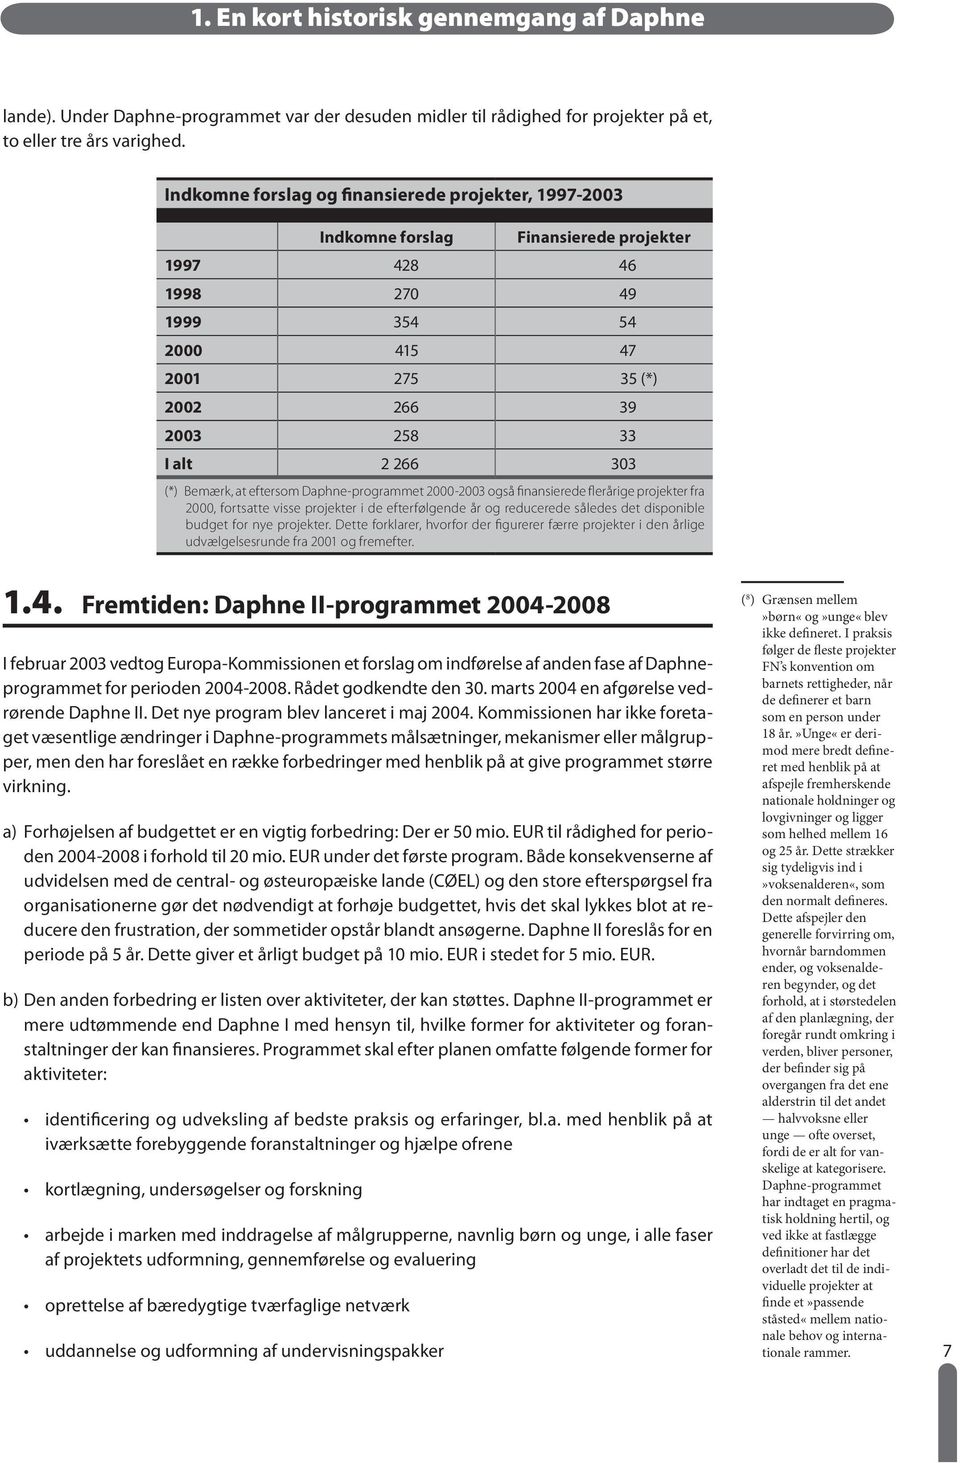 (*) Bemærk, at eftersom Daphne-programmet 2000-2003 også finansierede flerårige projekter fra 2000, fortsatte visse projekter i de efterfølgende år og reducerede således det disponible budget for nye